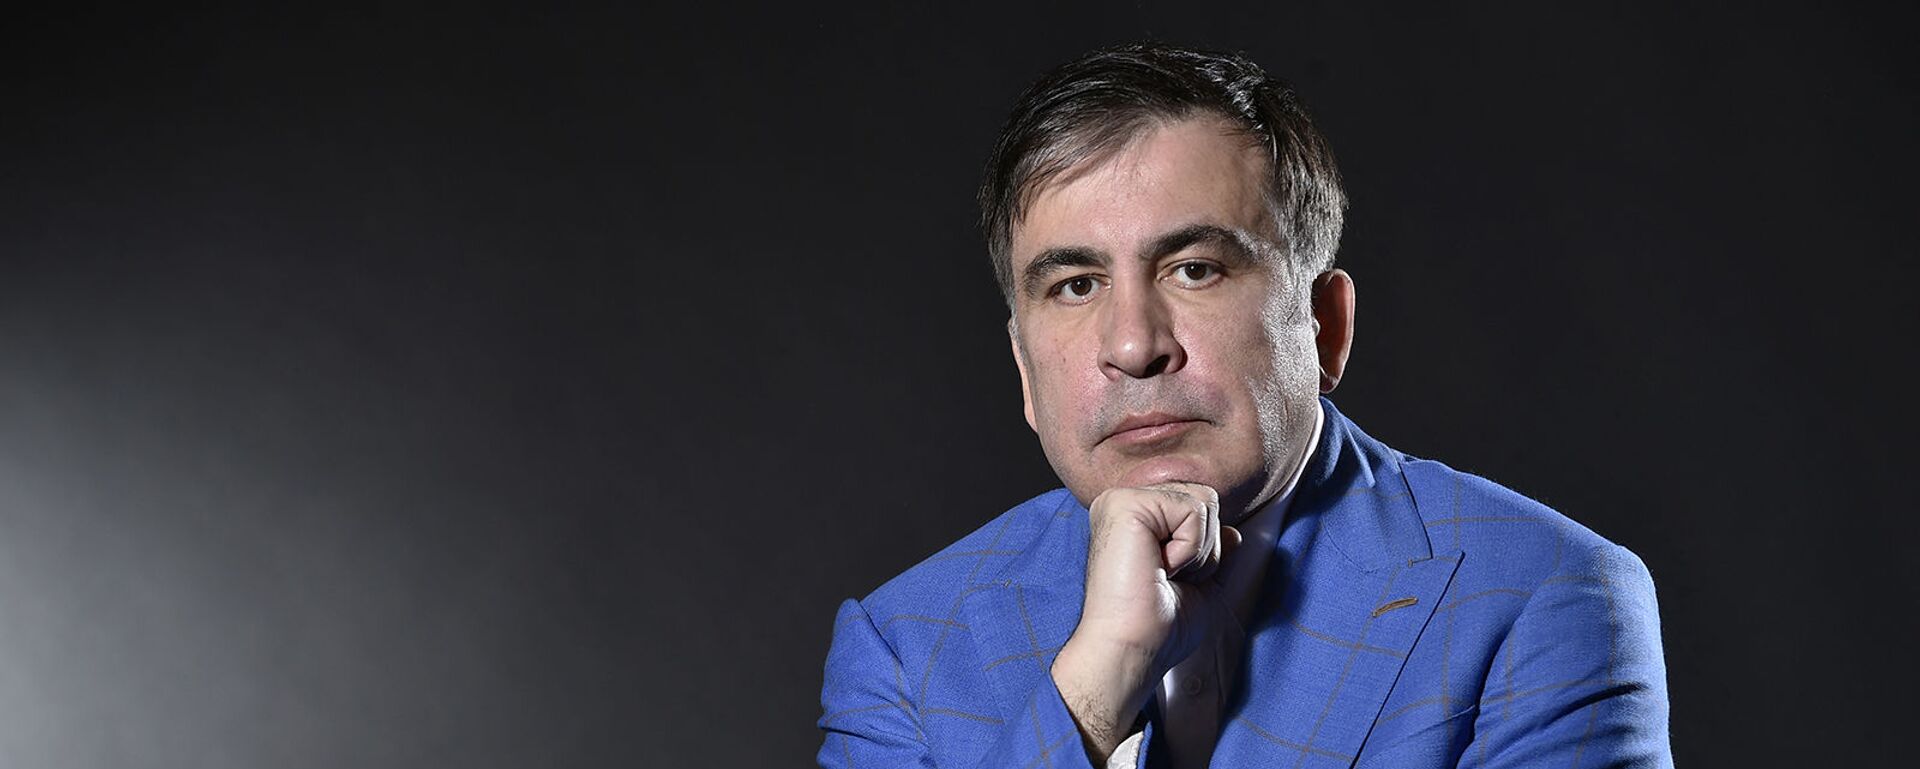 Бывший президент Грузии Михаил Саакашвили во время фотосессии (7 марта 2018). Амстердам - Sputnik Արմենիա, 1920, 29.10.2021